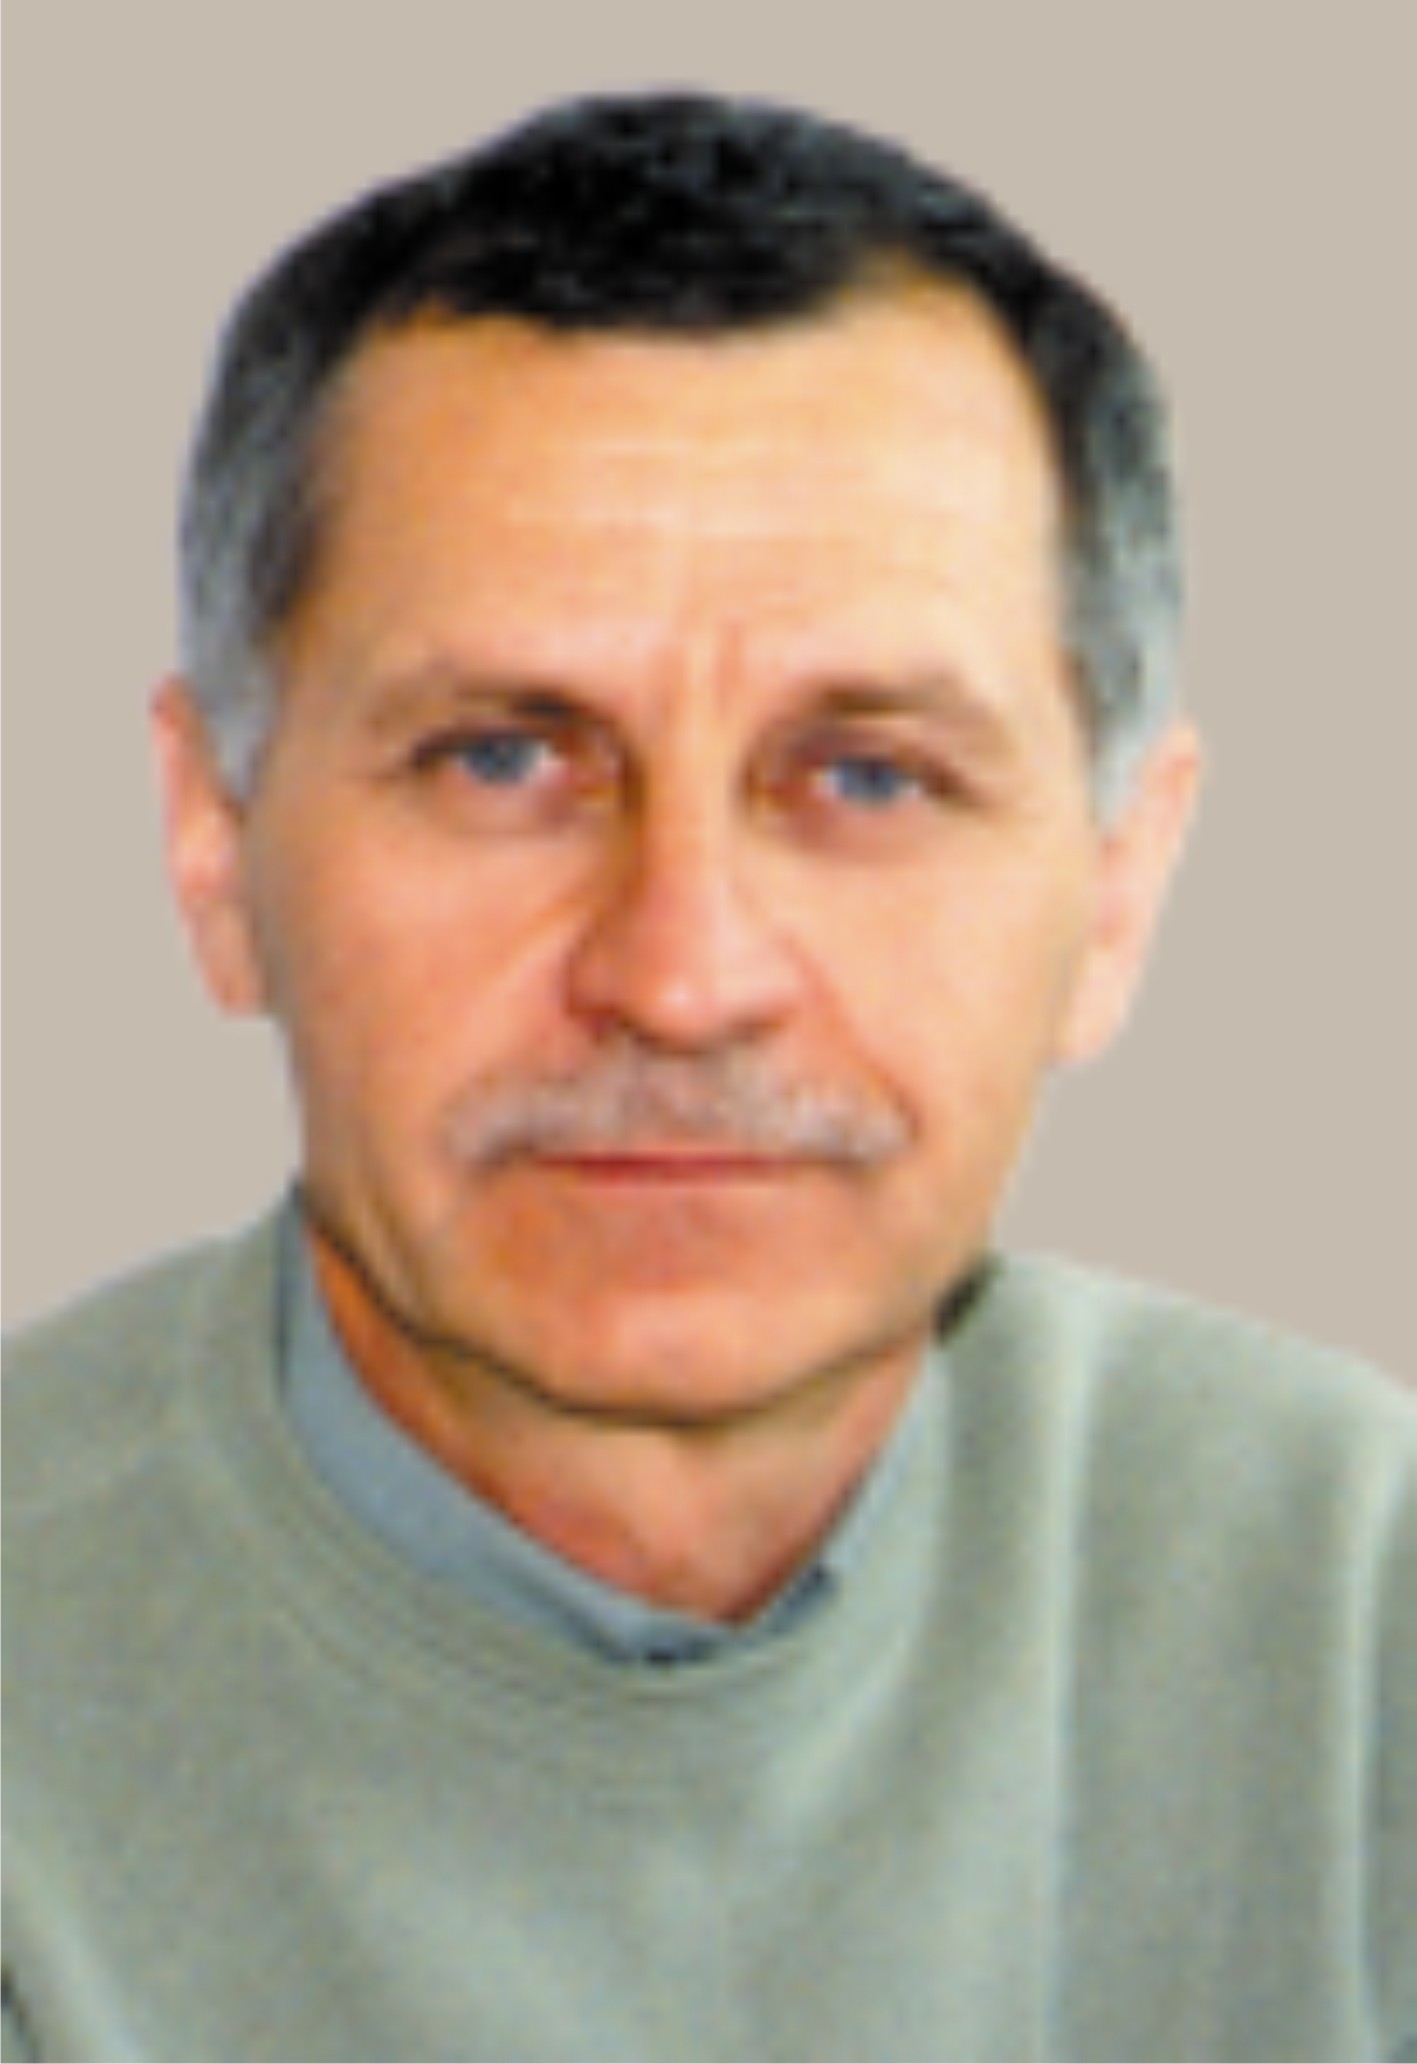                         Patrakov Yuri
            